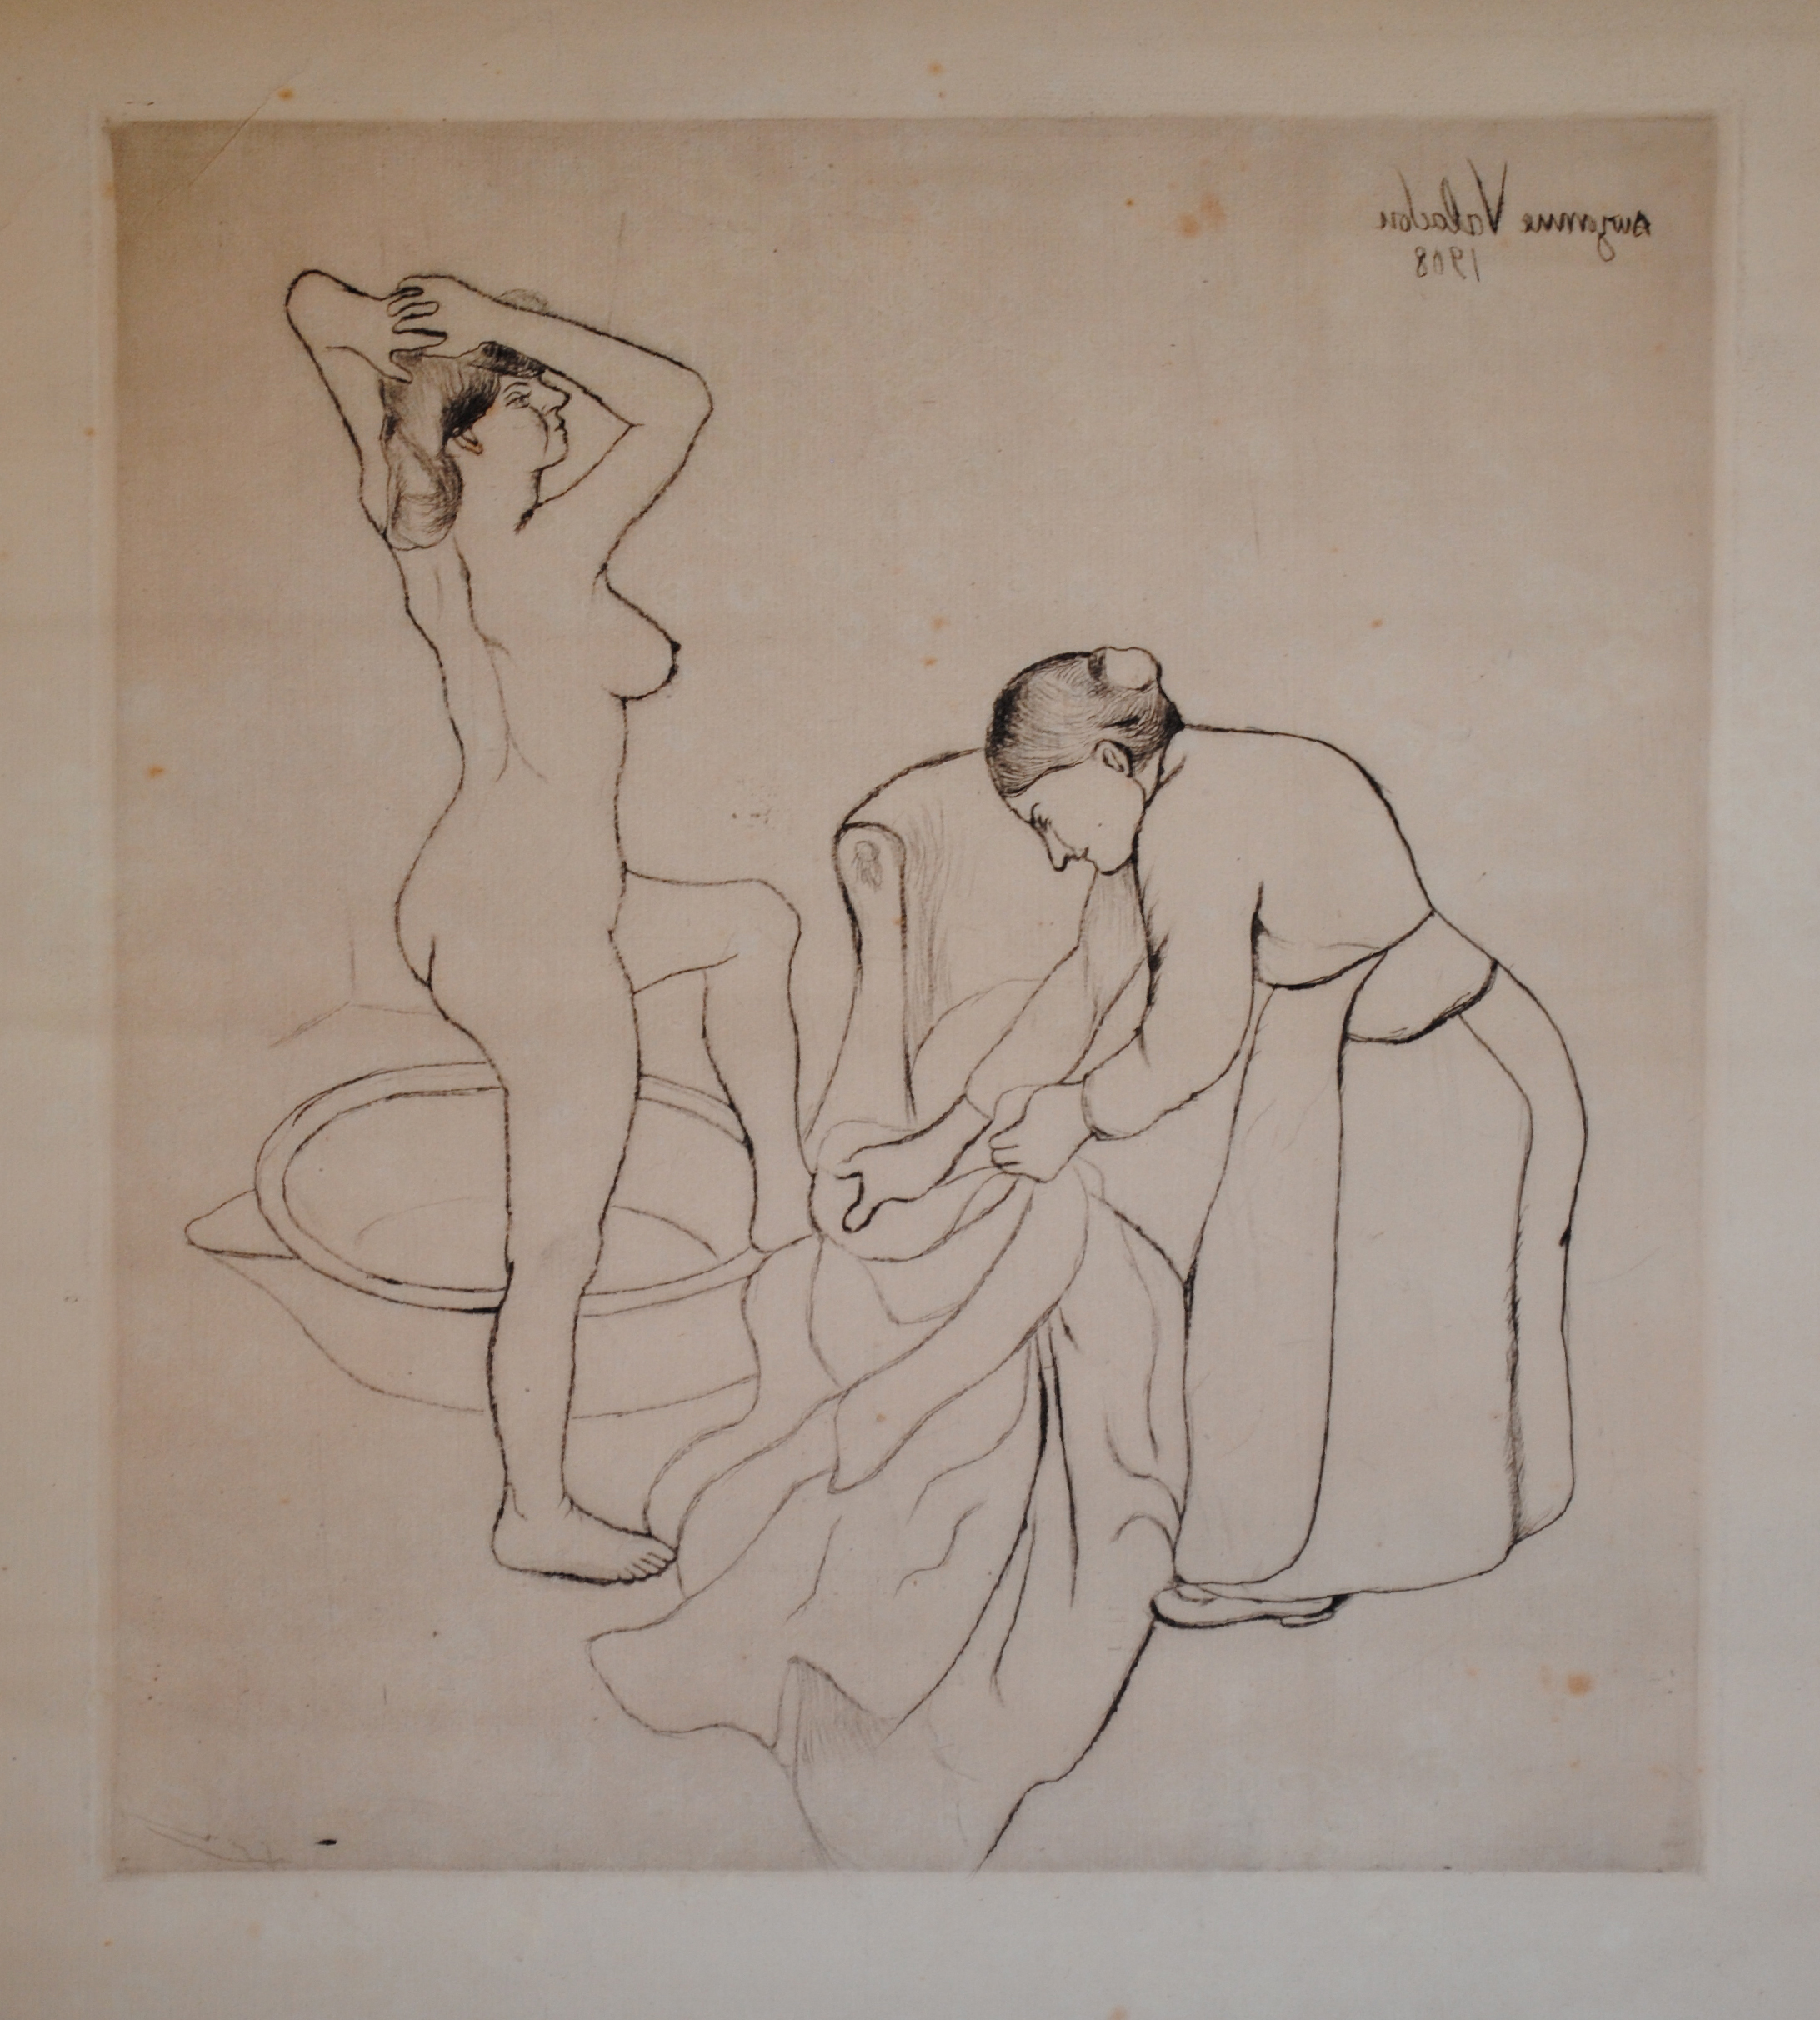 Valadon, Fille aux Gros Seins et Femme Vieille, E24, drypoint, 1908